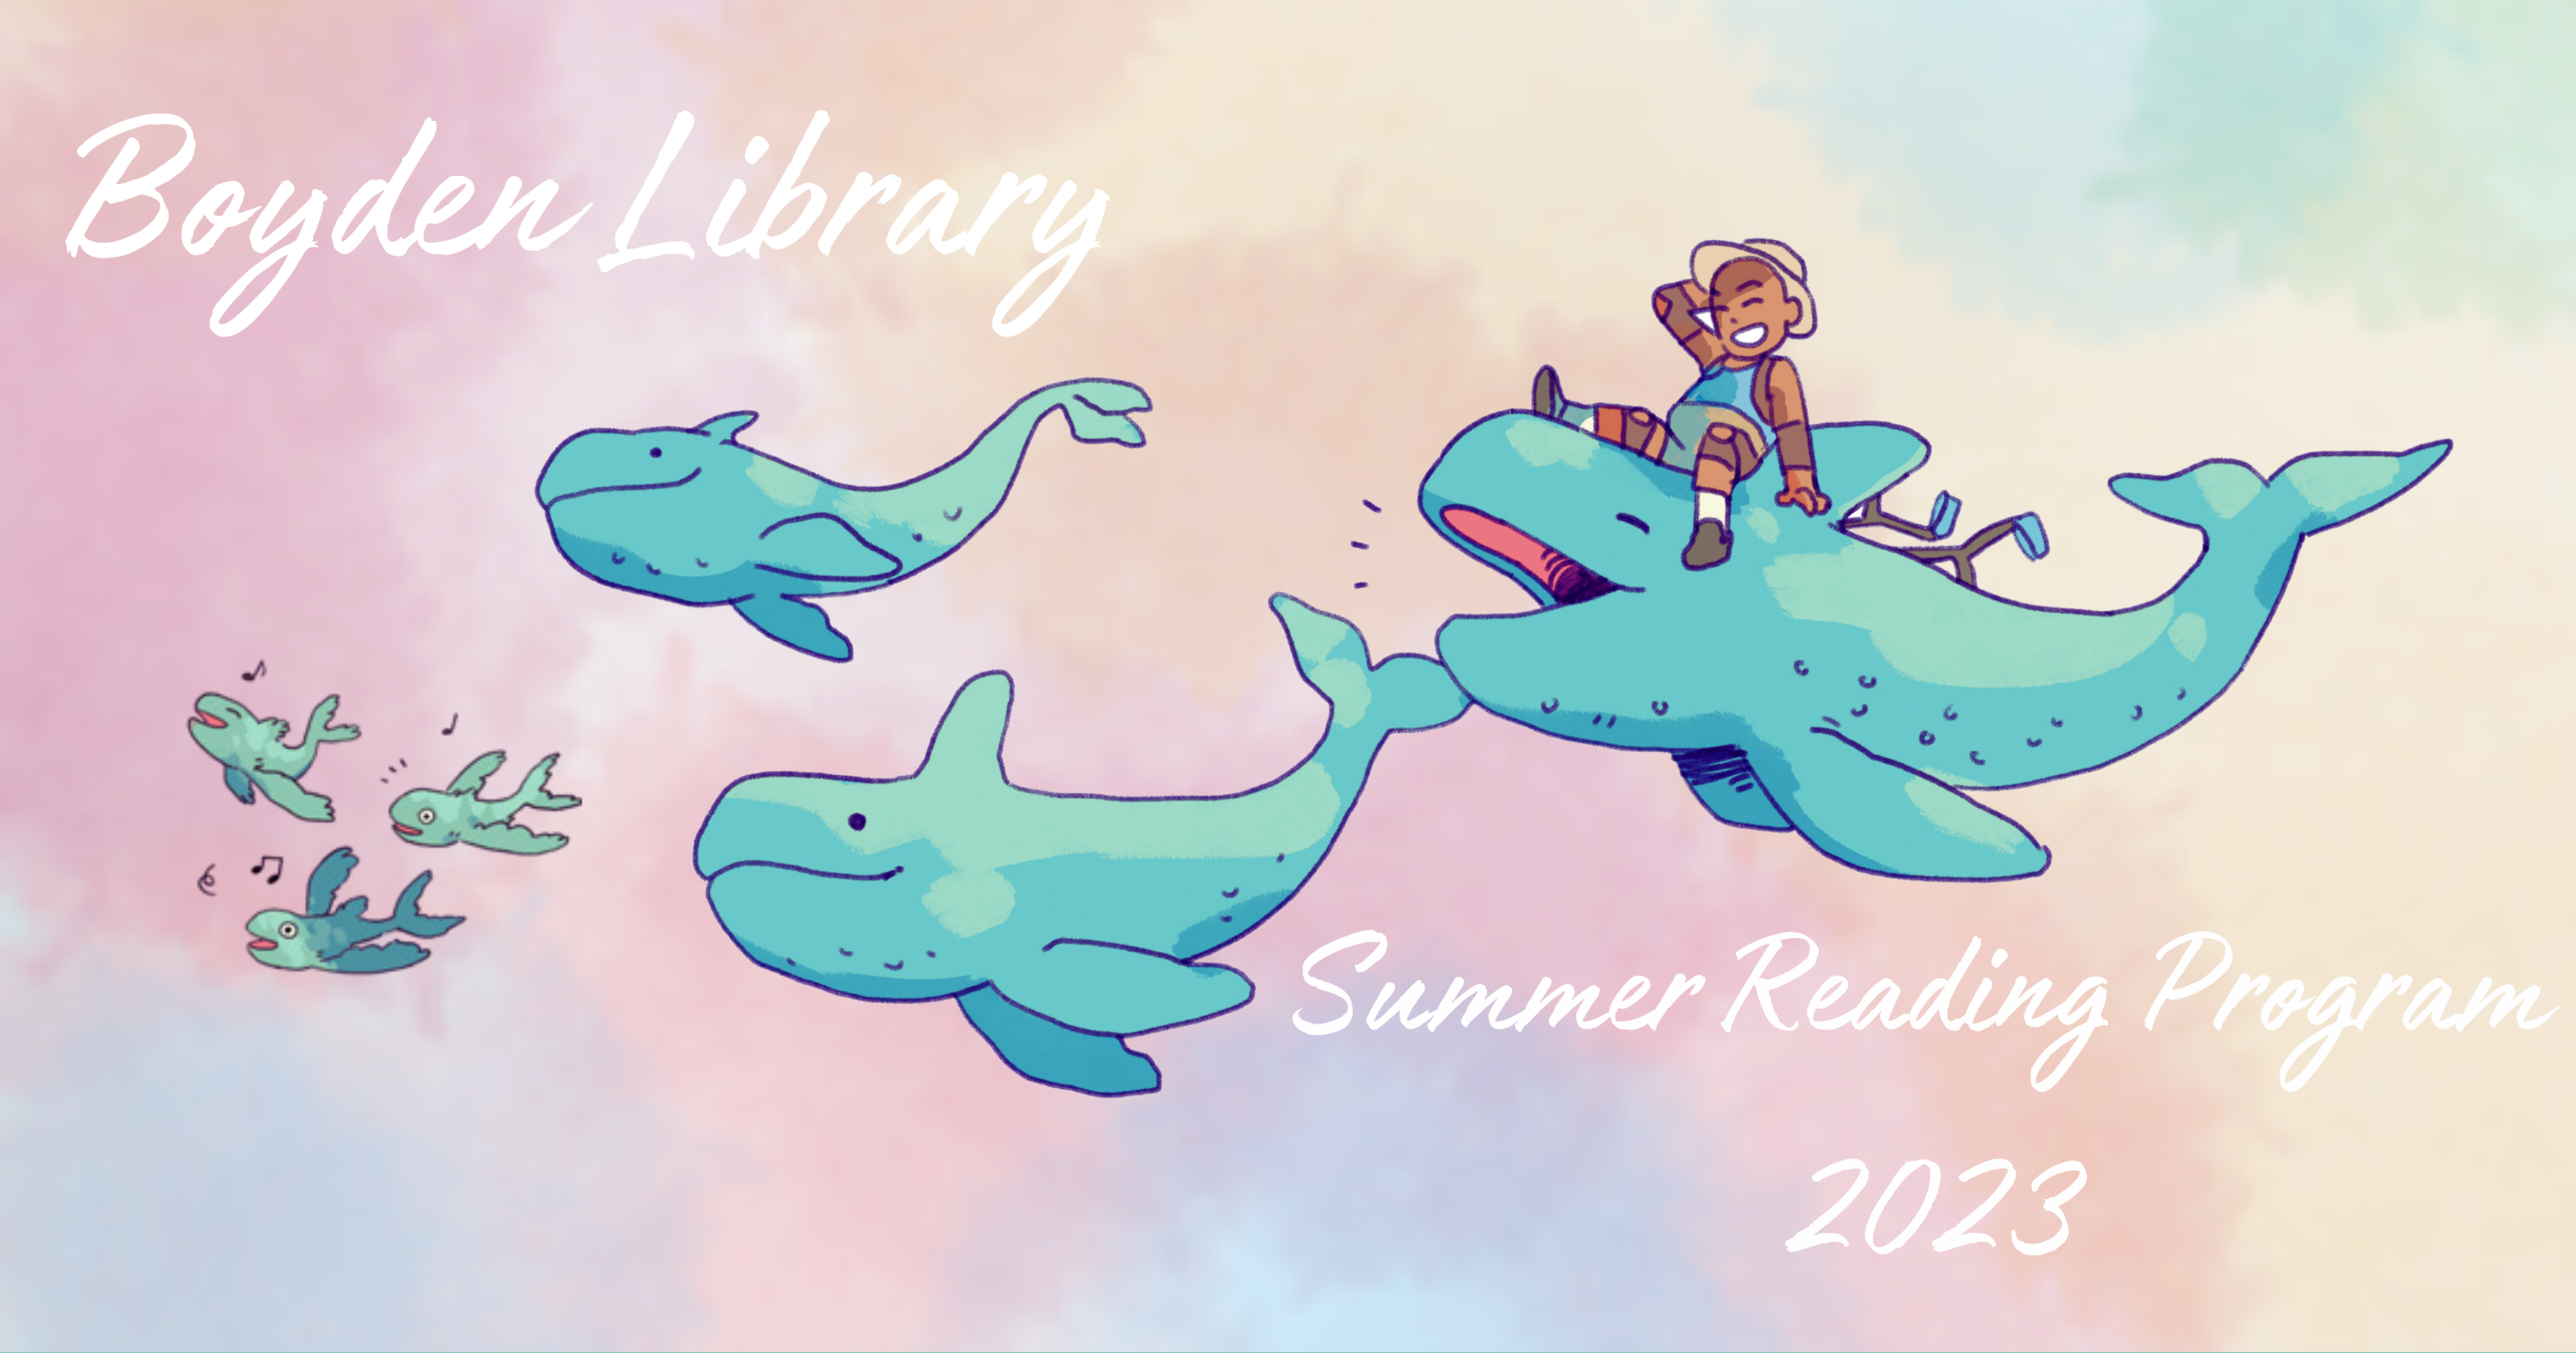 Summer Reading 2023